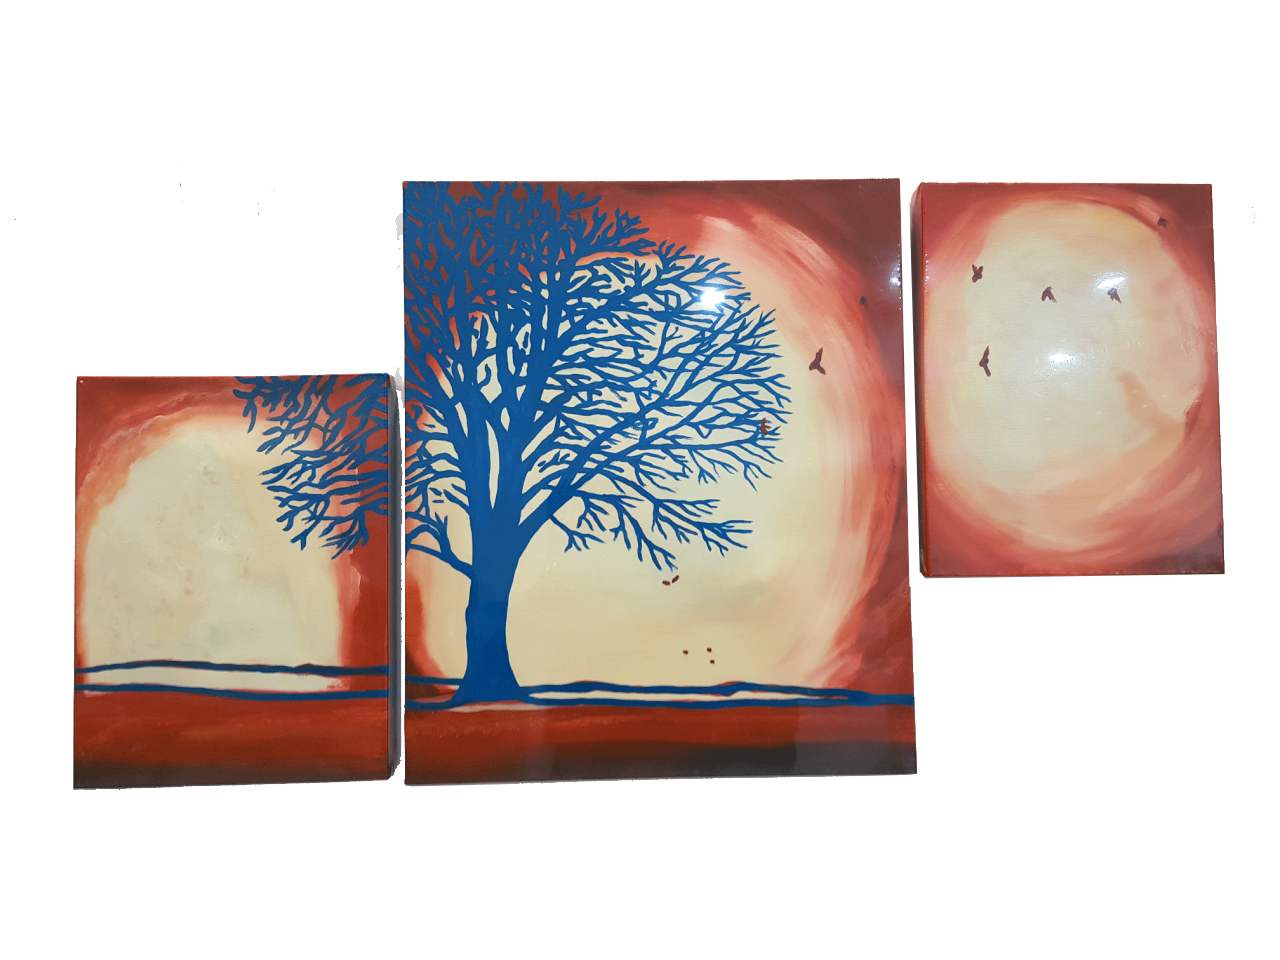 Misiny-Sonbahar Yağlı Boya Tablo 006 - 30 x 40 x 2 - 50 x 60 cm